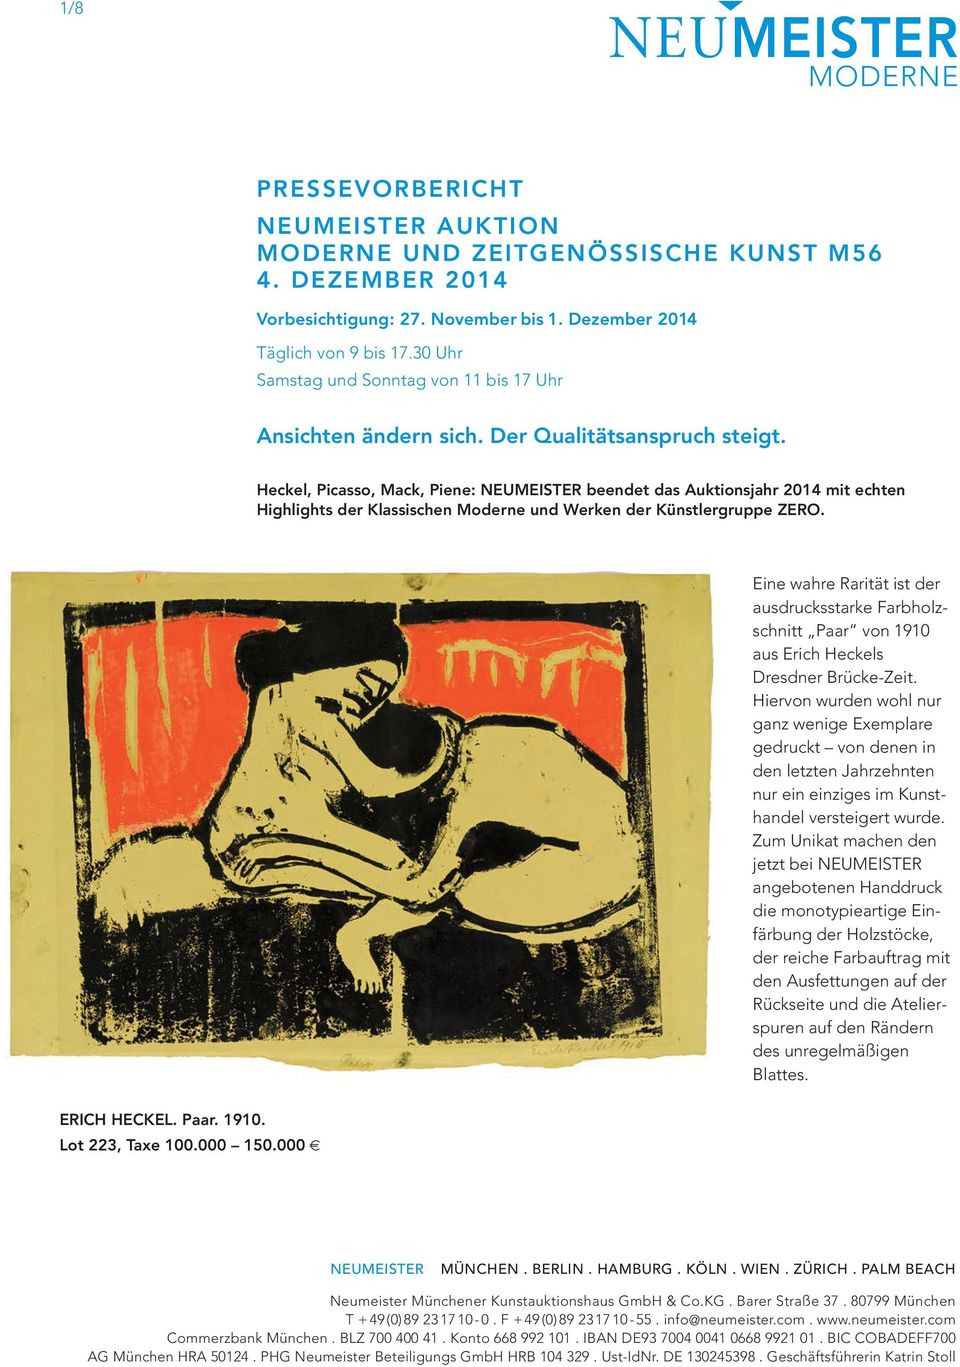 Heckel, Picasso, Mack, Piene: beendet das Auktionsjahr 2014 mit echten Highlights der Klassischen Moderne und Werken der Künstlergruppe ZERO.